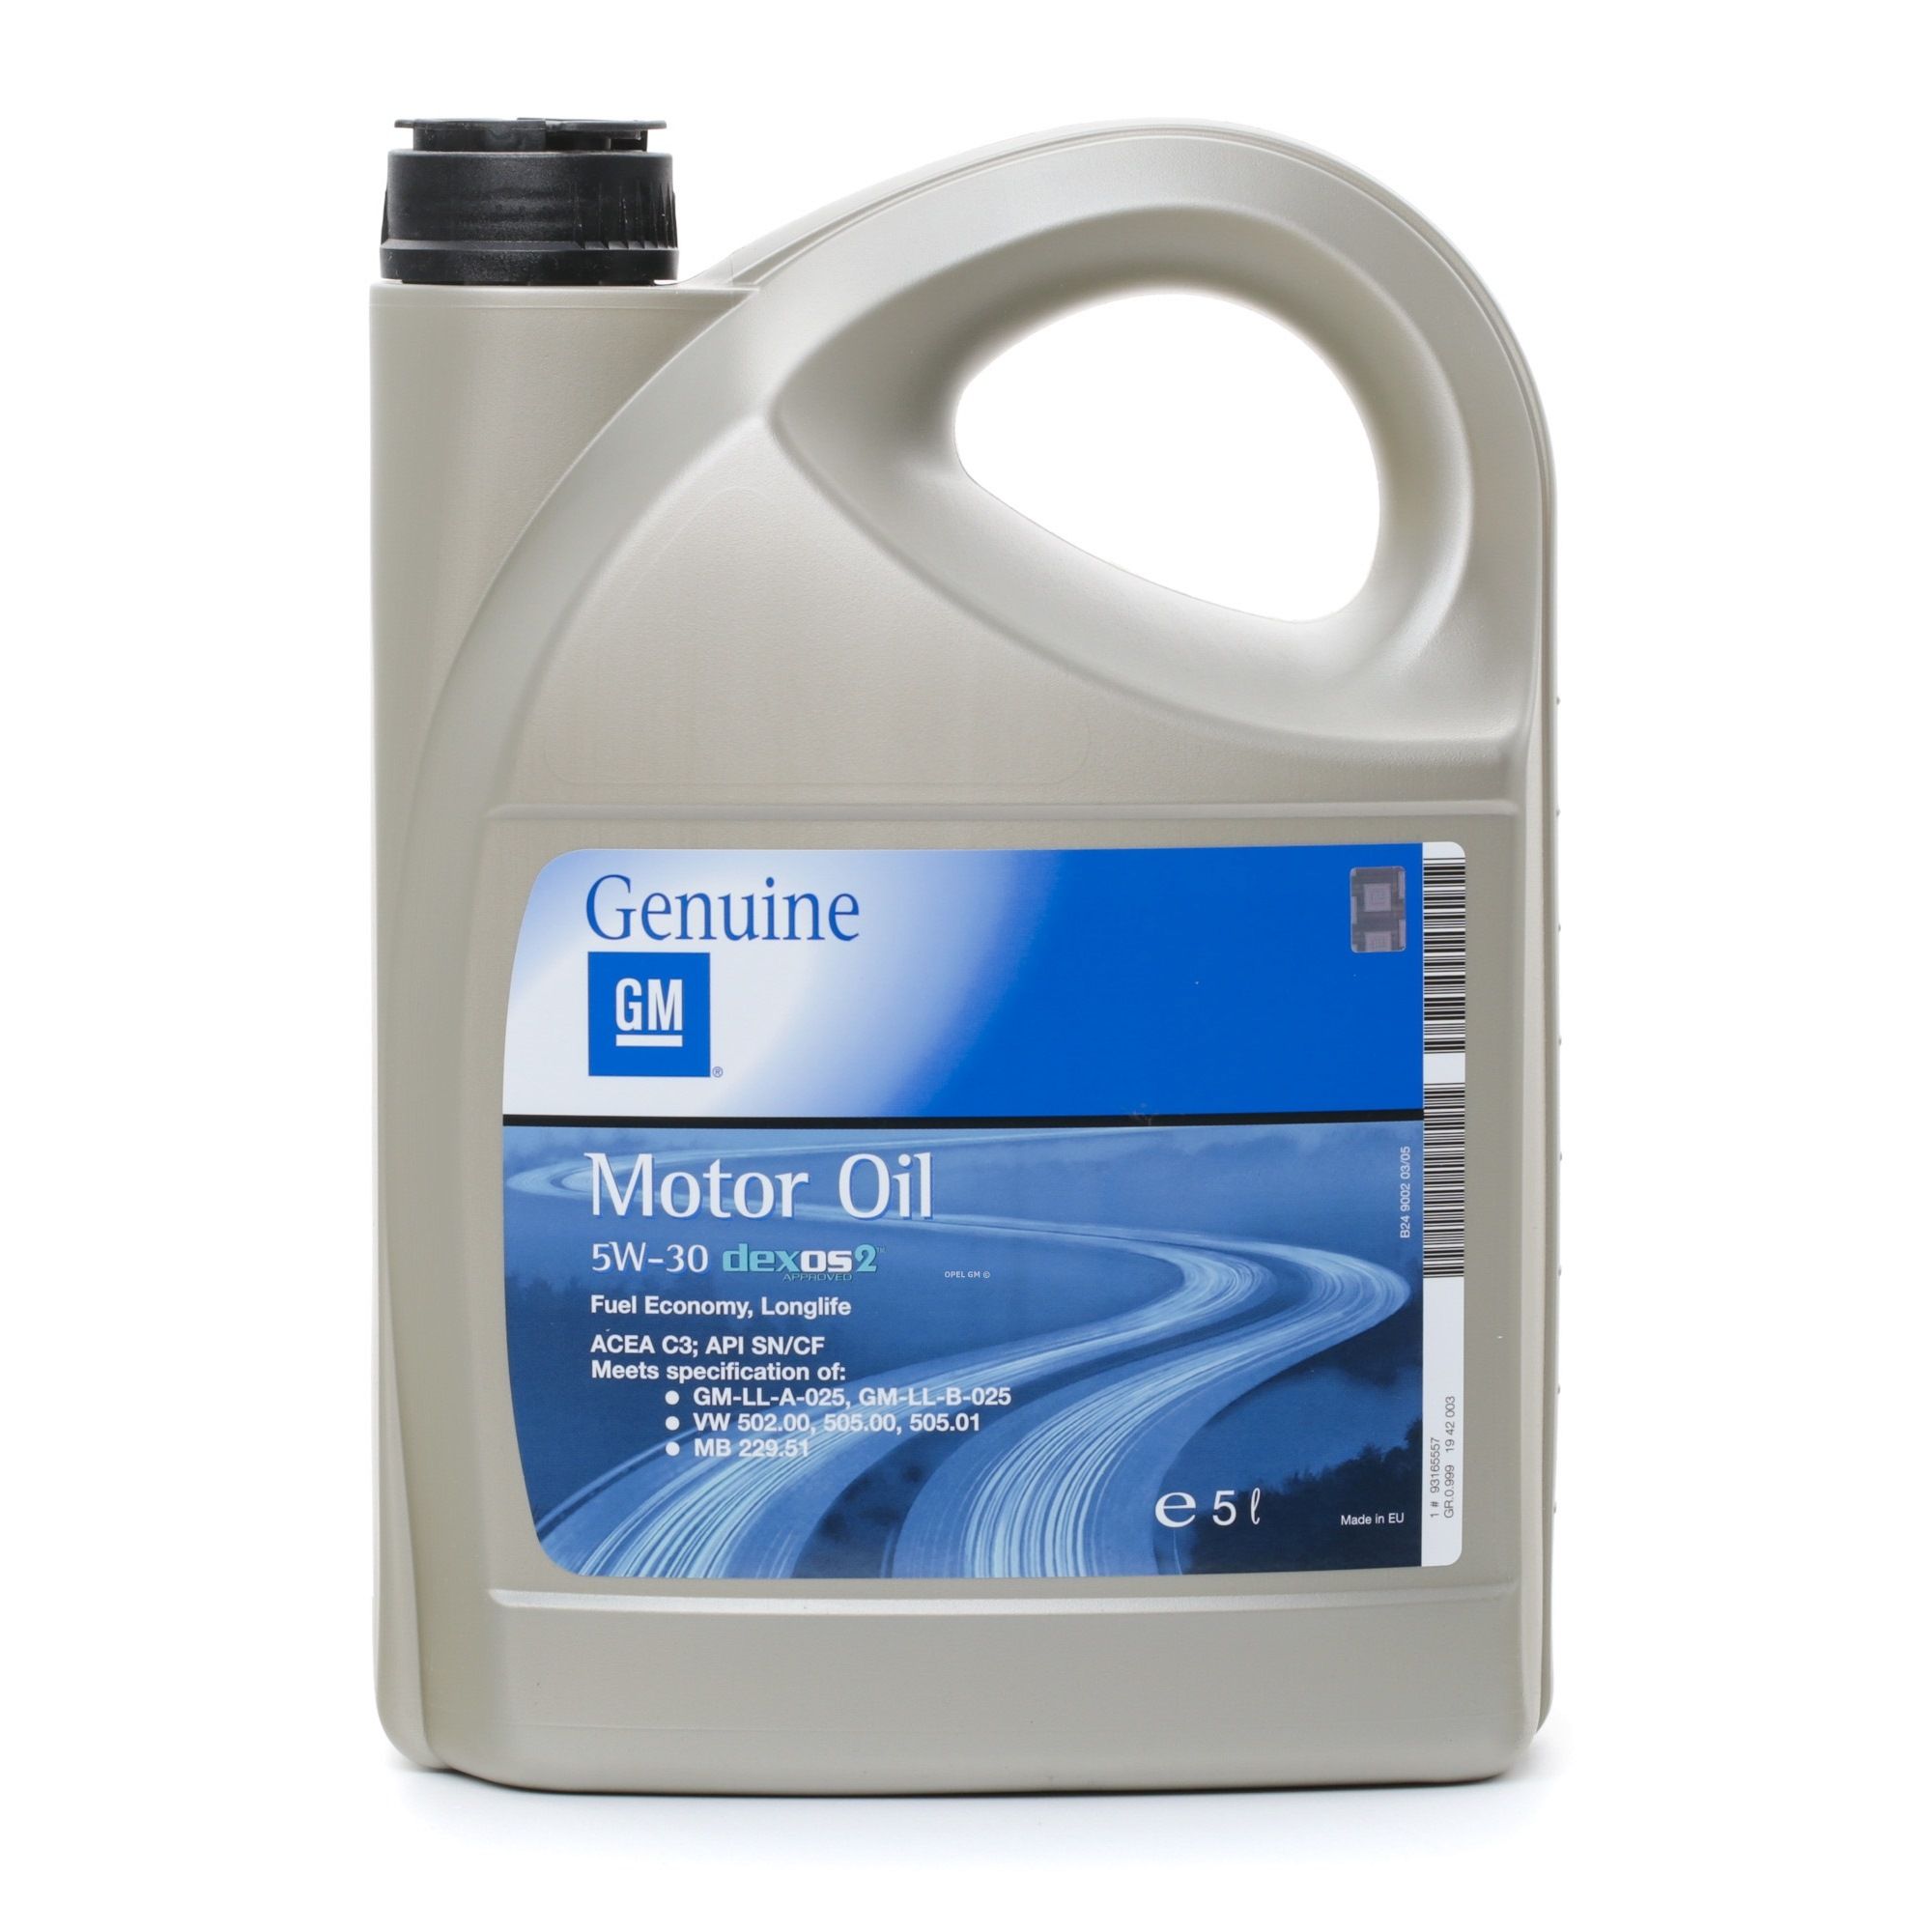 Motorolie OPEL GM 19 42 003 - Oliën & vloeistoffen voor Mercedes auto-onderdelen order